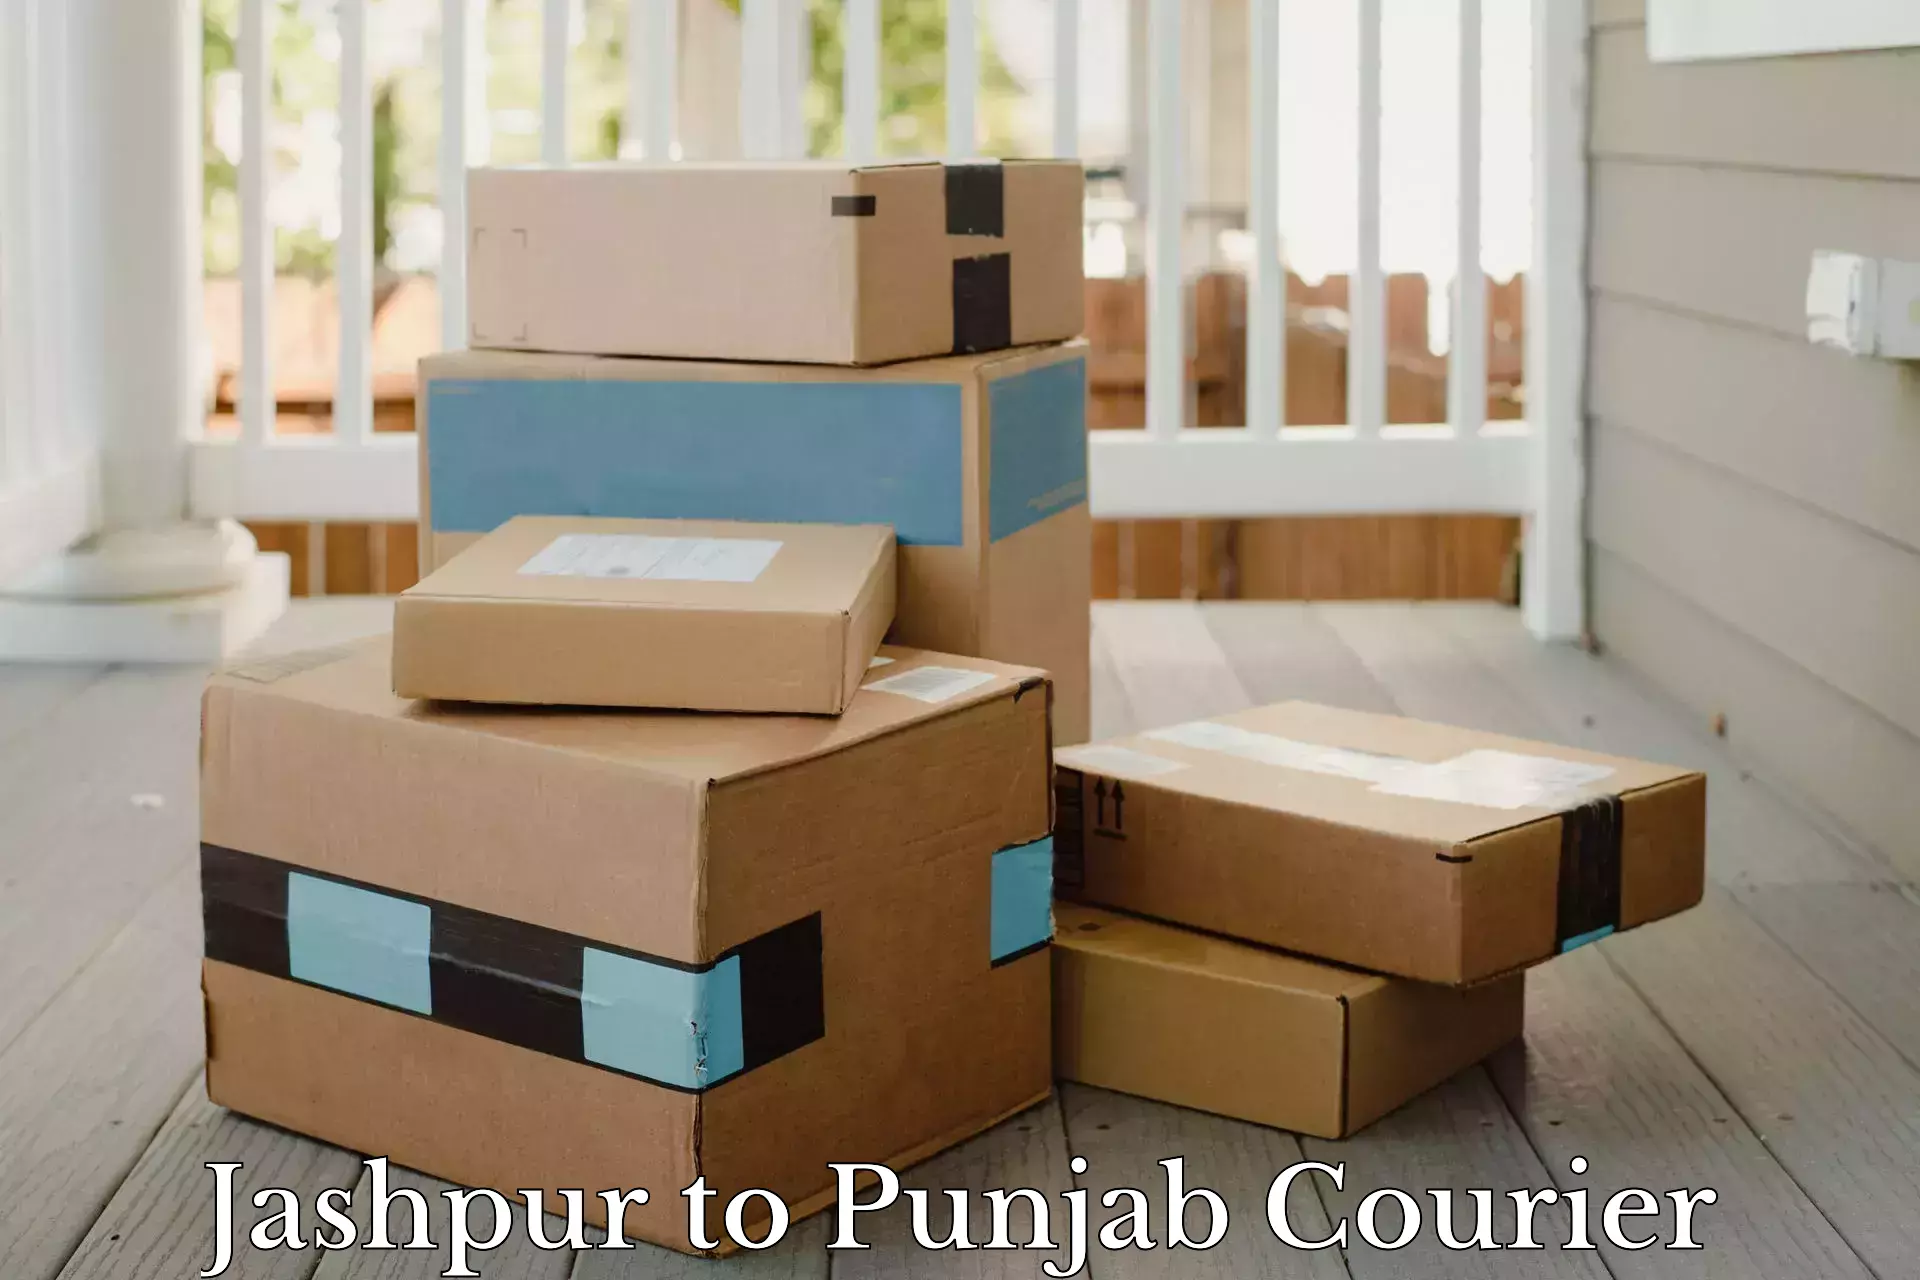 Urgent courier needs in Jashpur to Ajnala